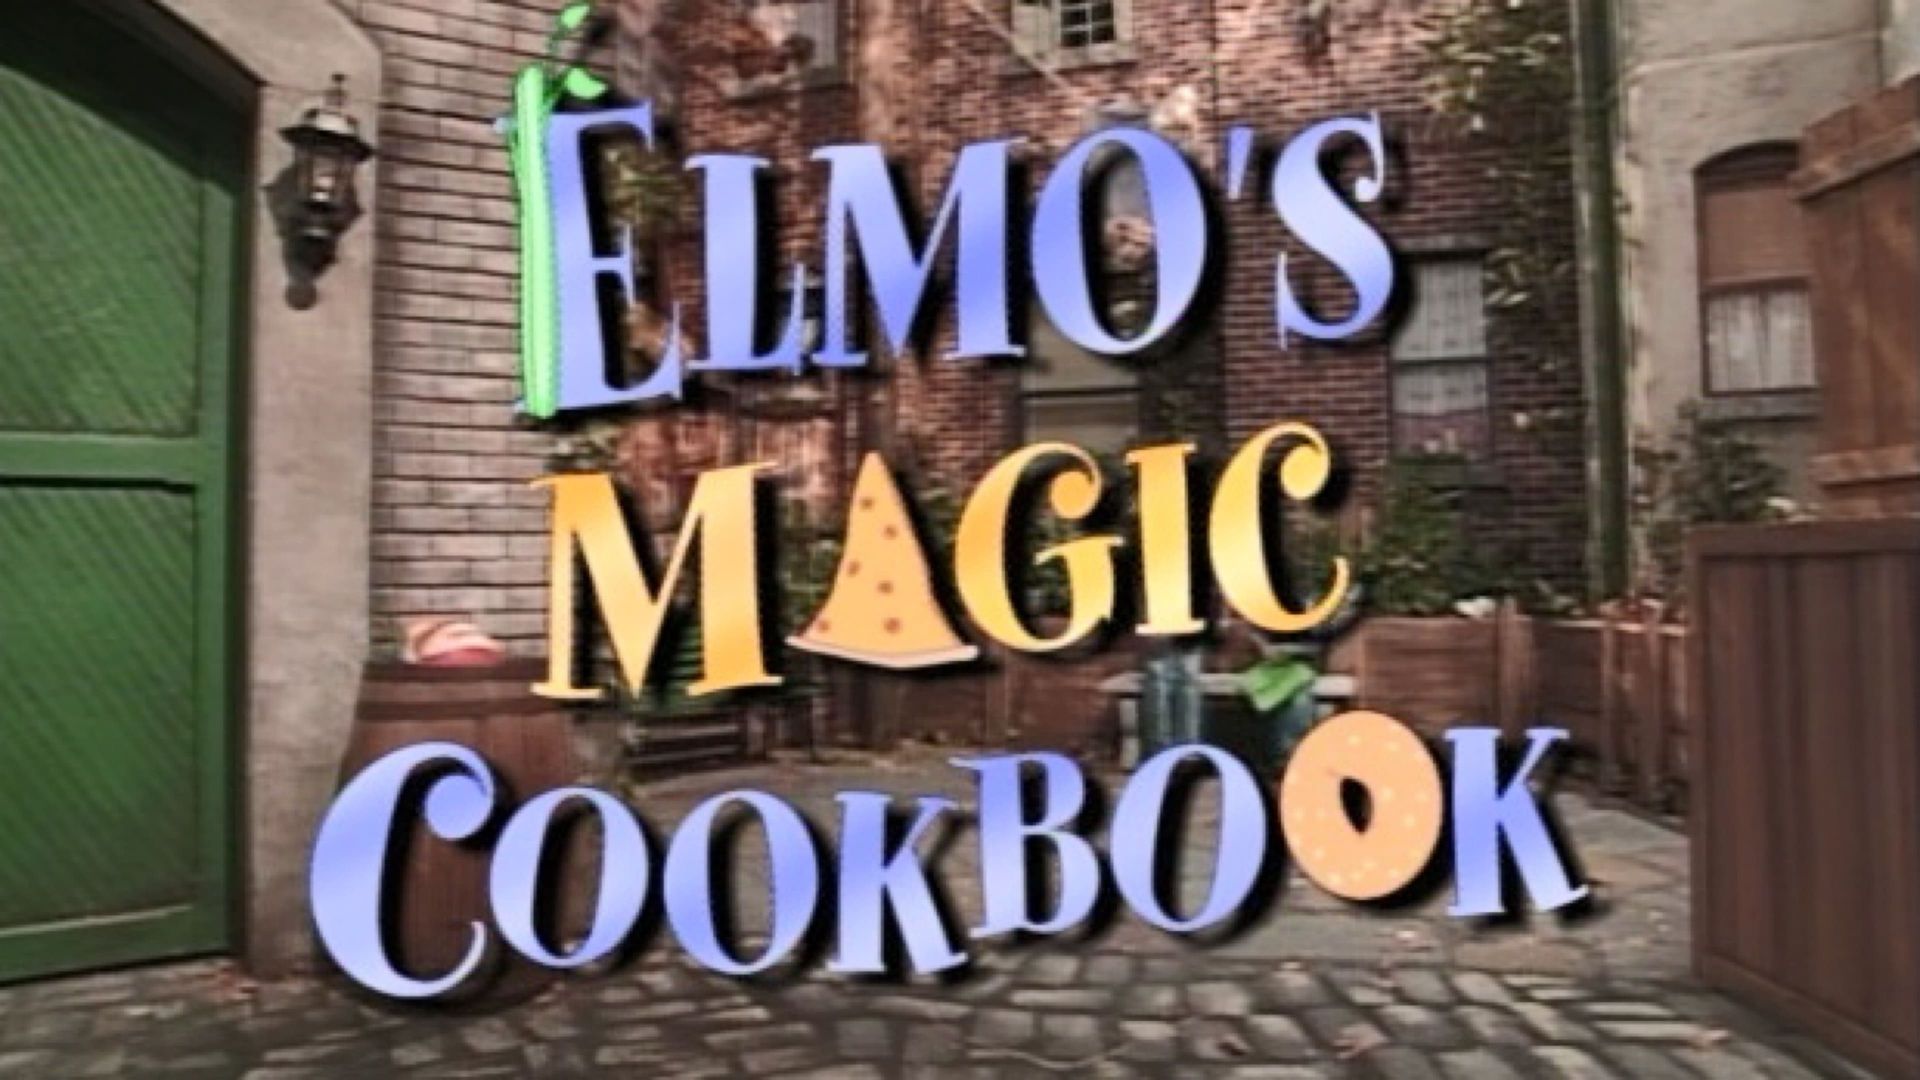 Elmo's Magic Cookbook background